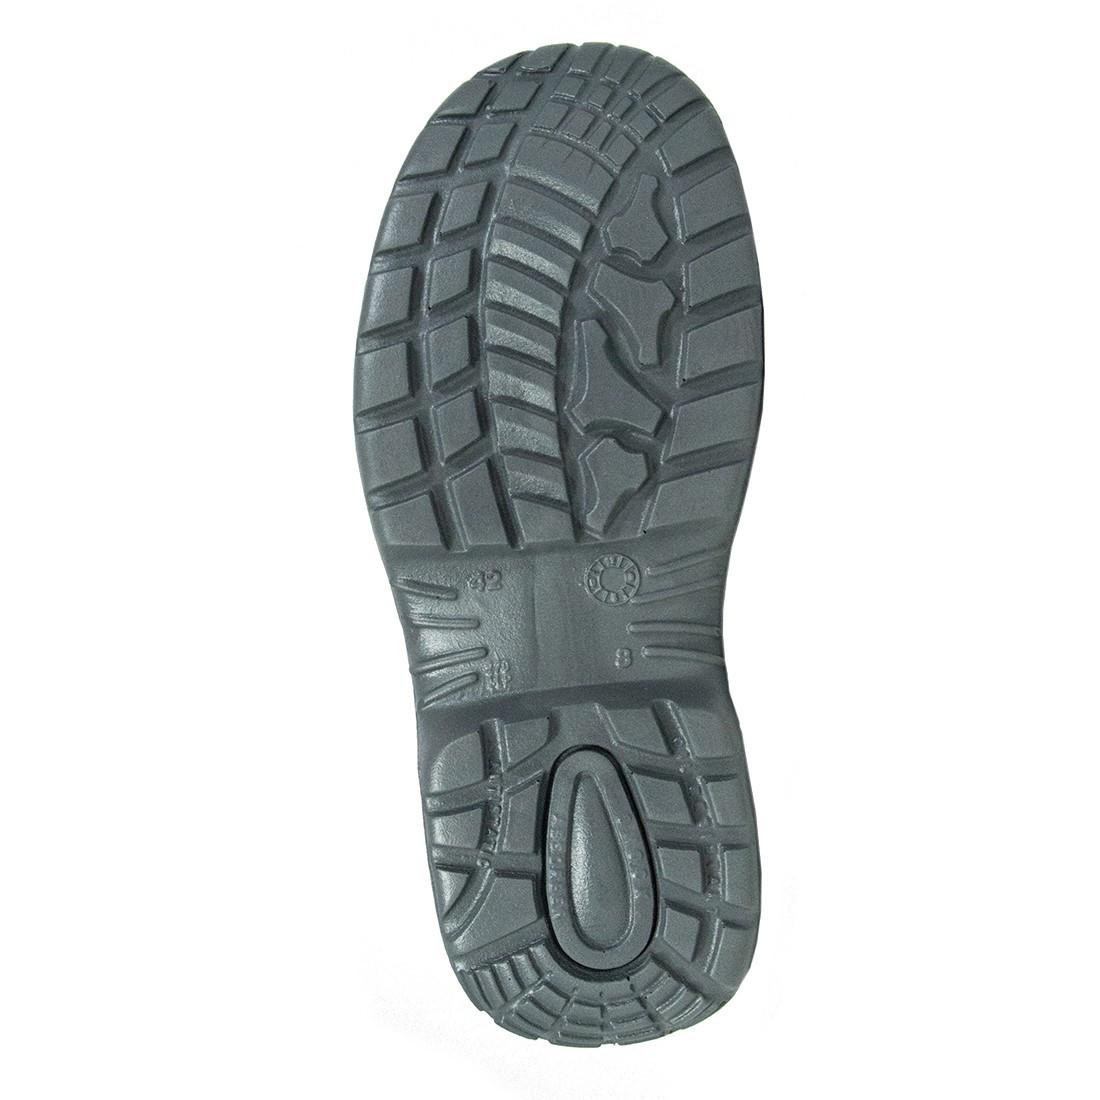 Colosseum Shoe S1P SRC - Les chaussures de protection